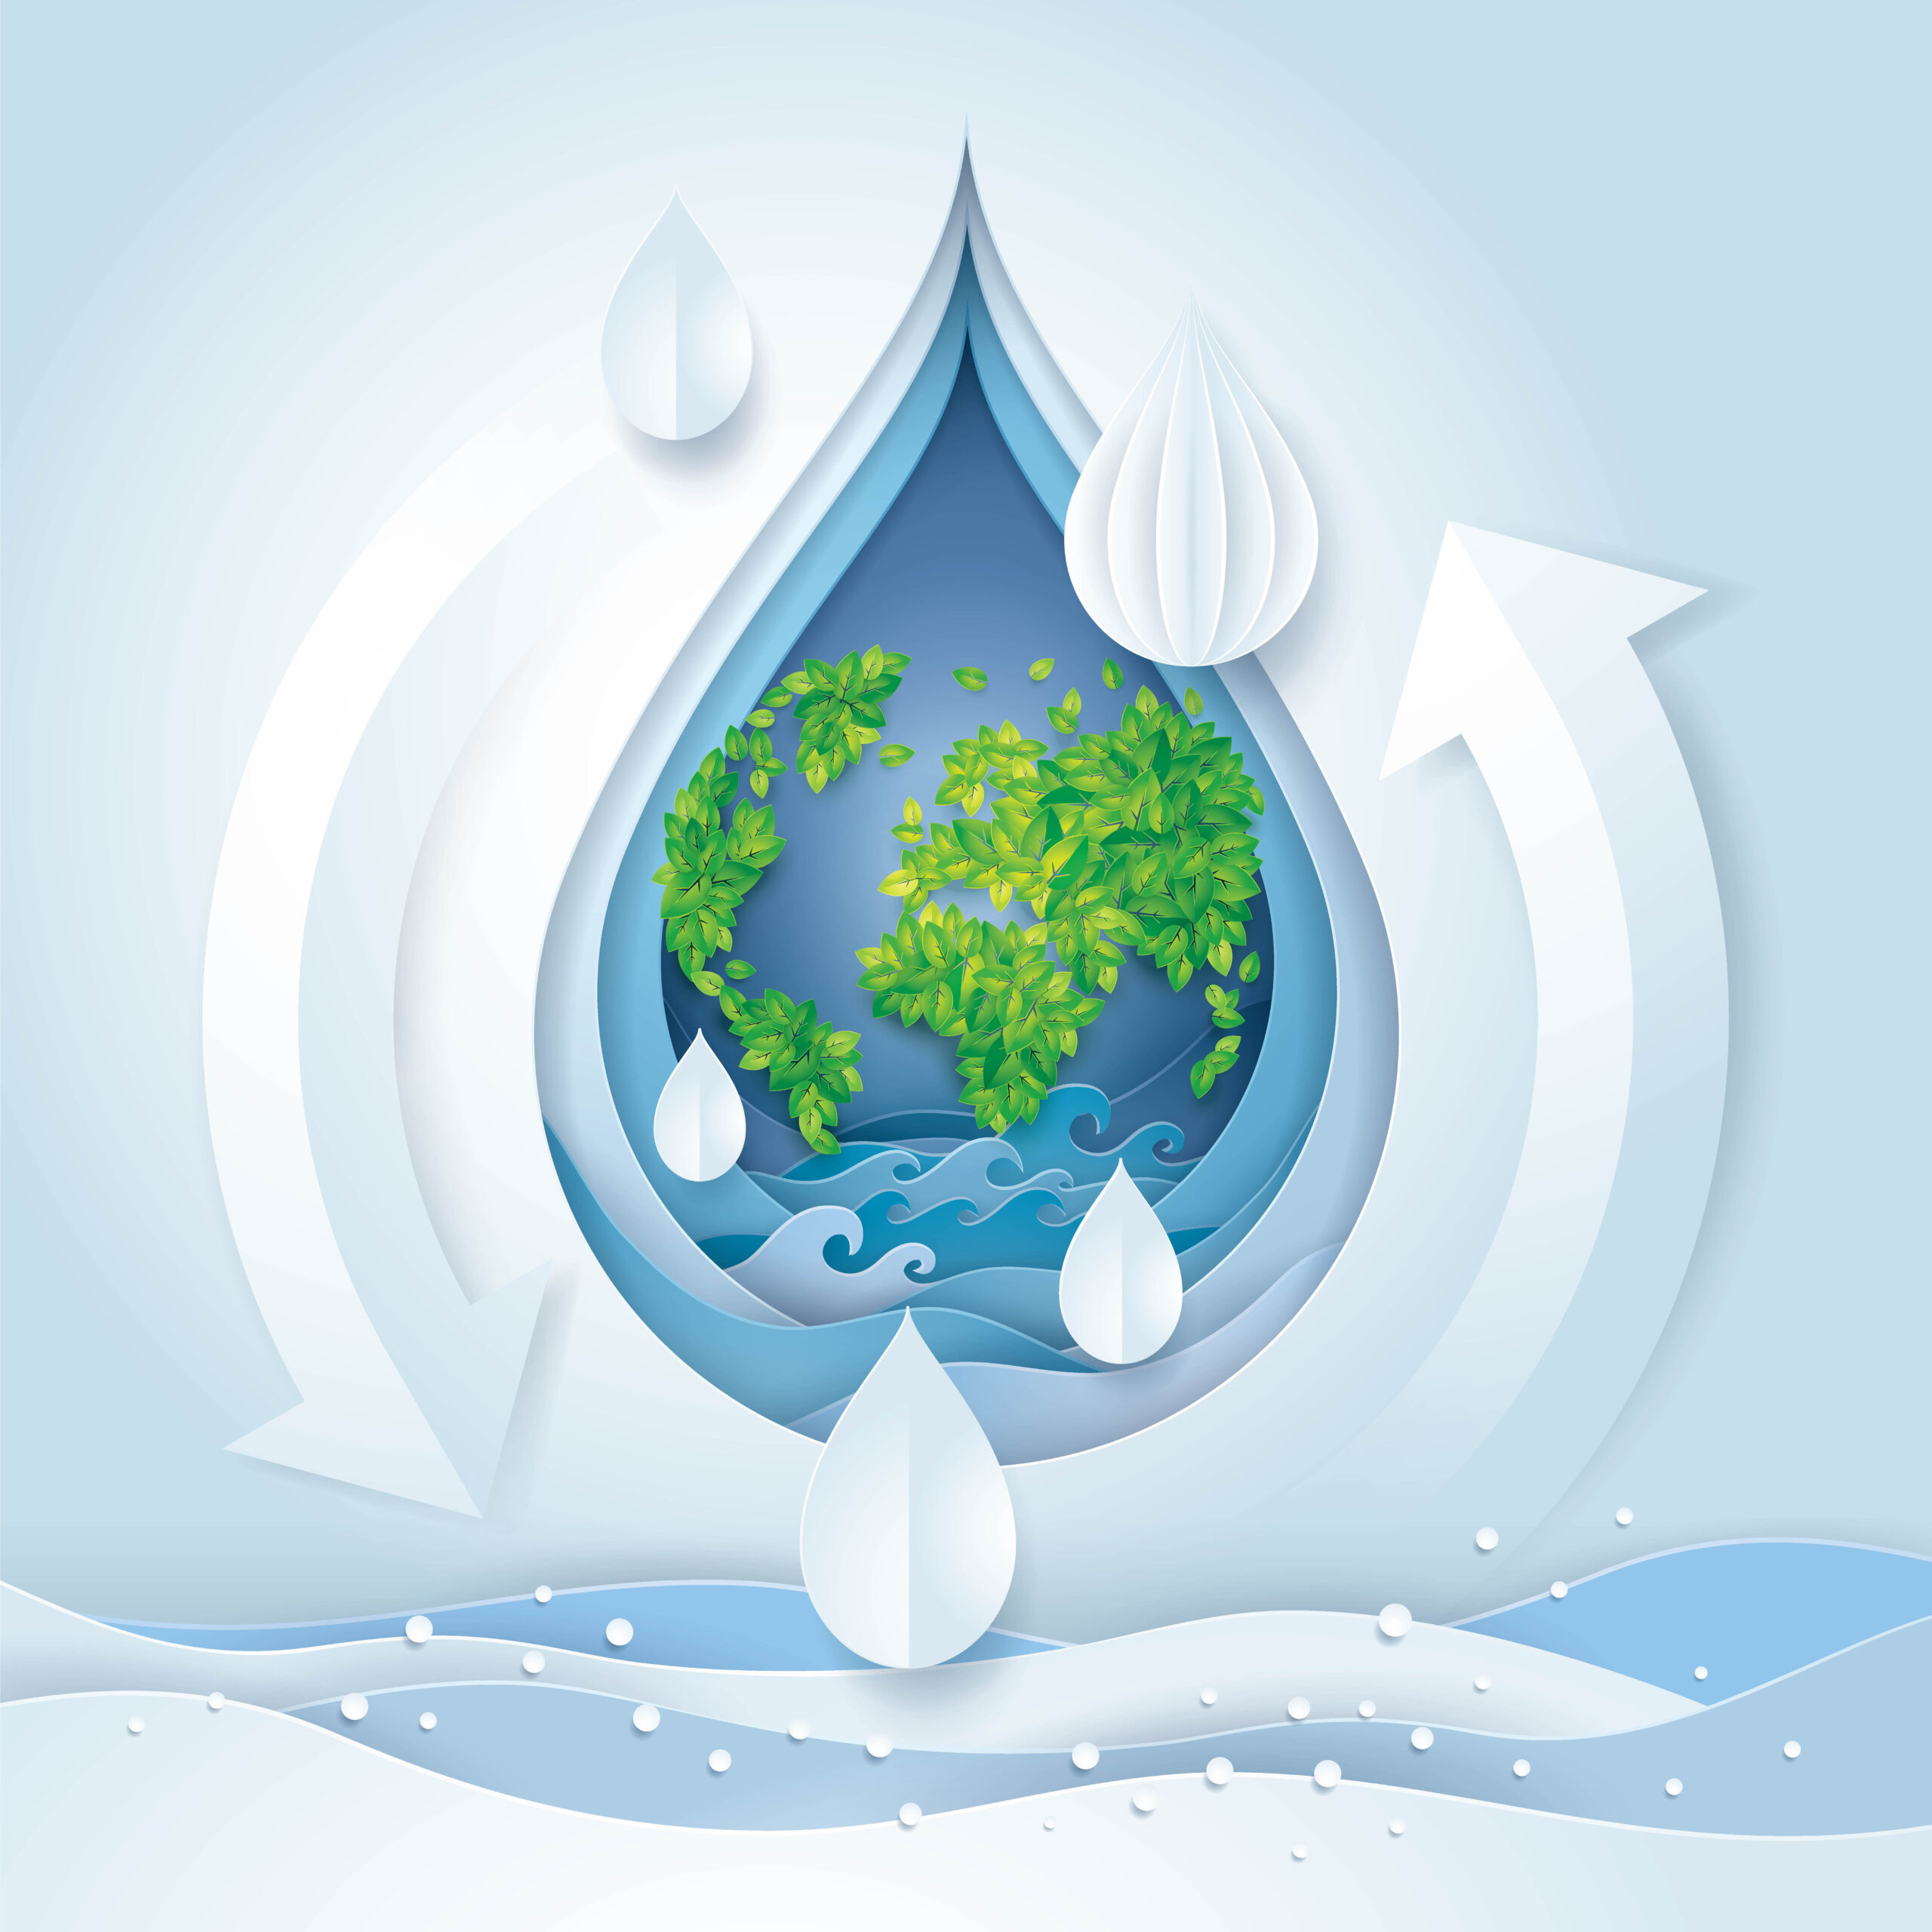 Dünya Su Günü - World Water Day 2023